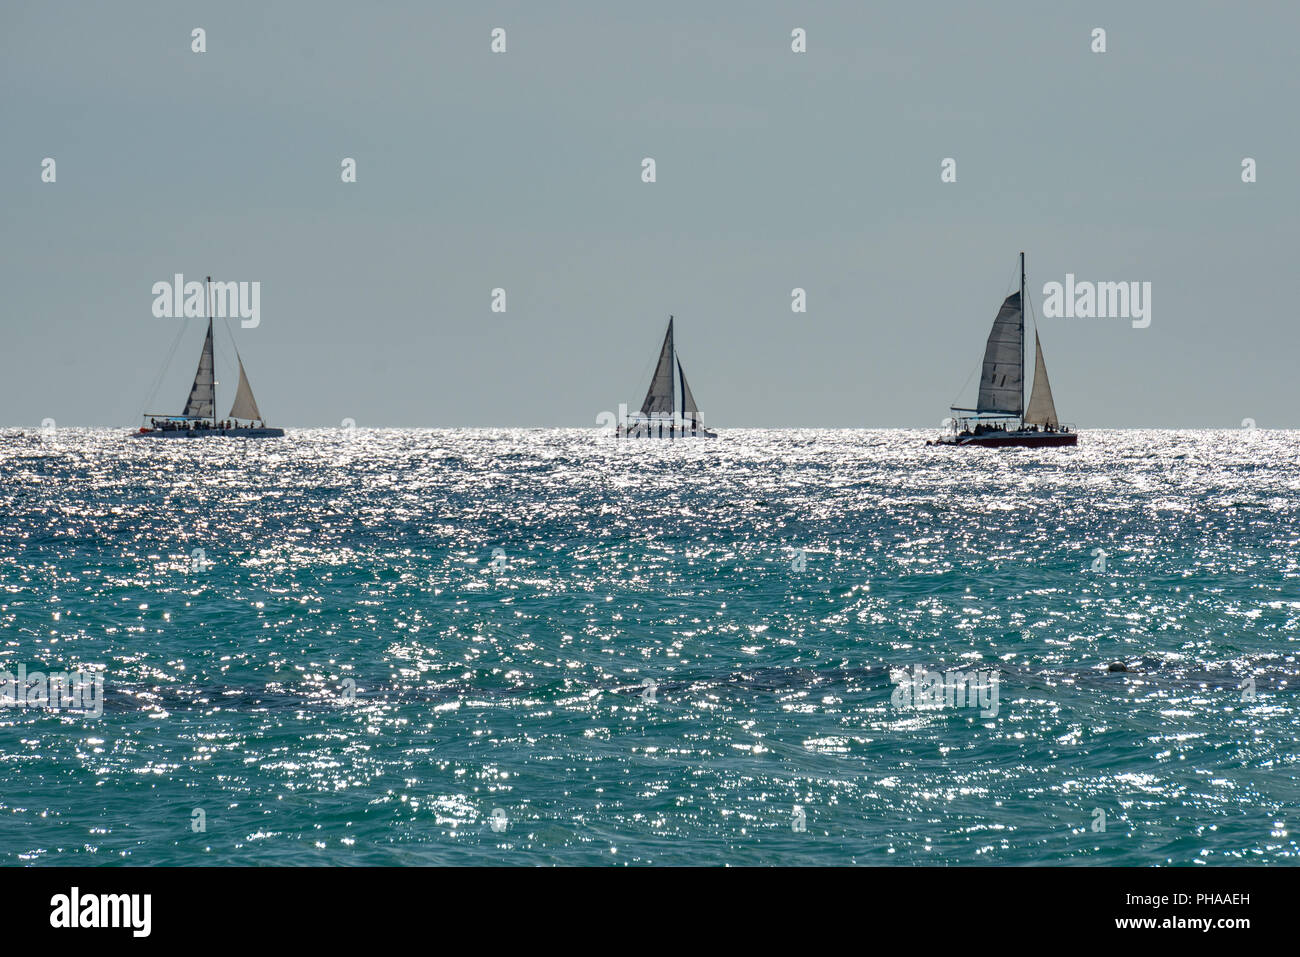 Bayahibe Repubblica Dominicana, 27 agosto 2018. Barche a vela in mare dei Caraibi. Foto di Enrique Shore Foto Stock